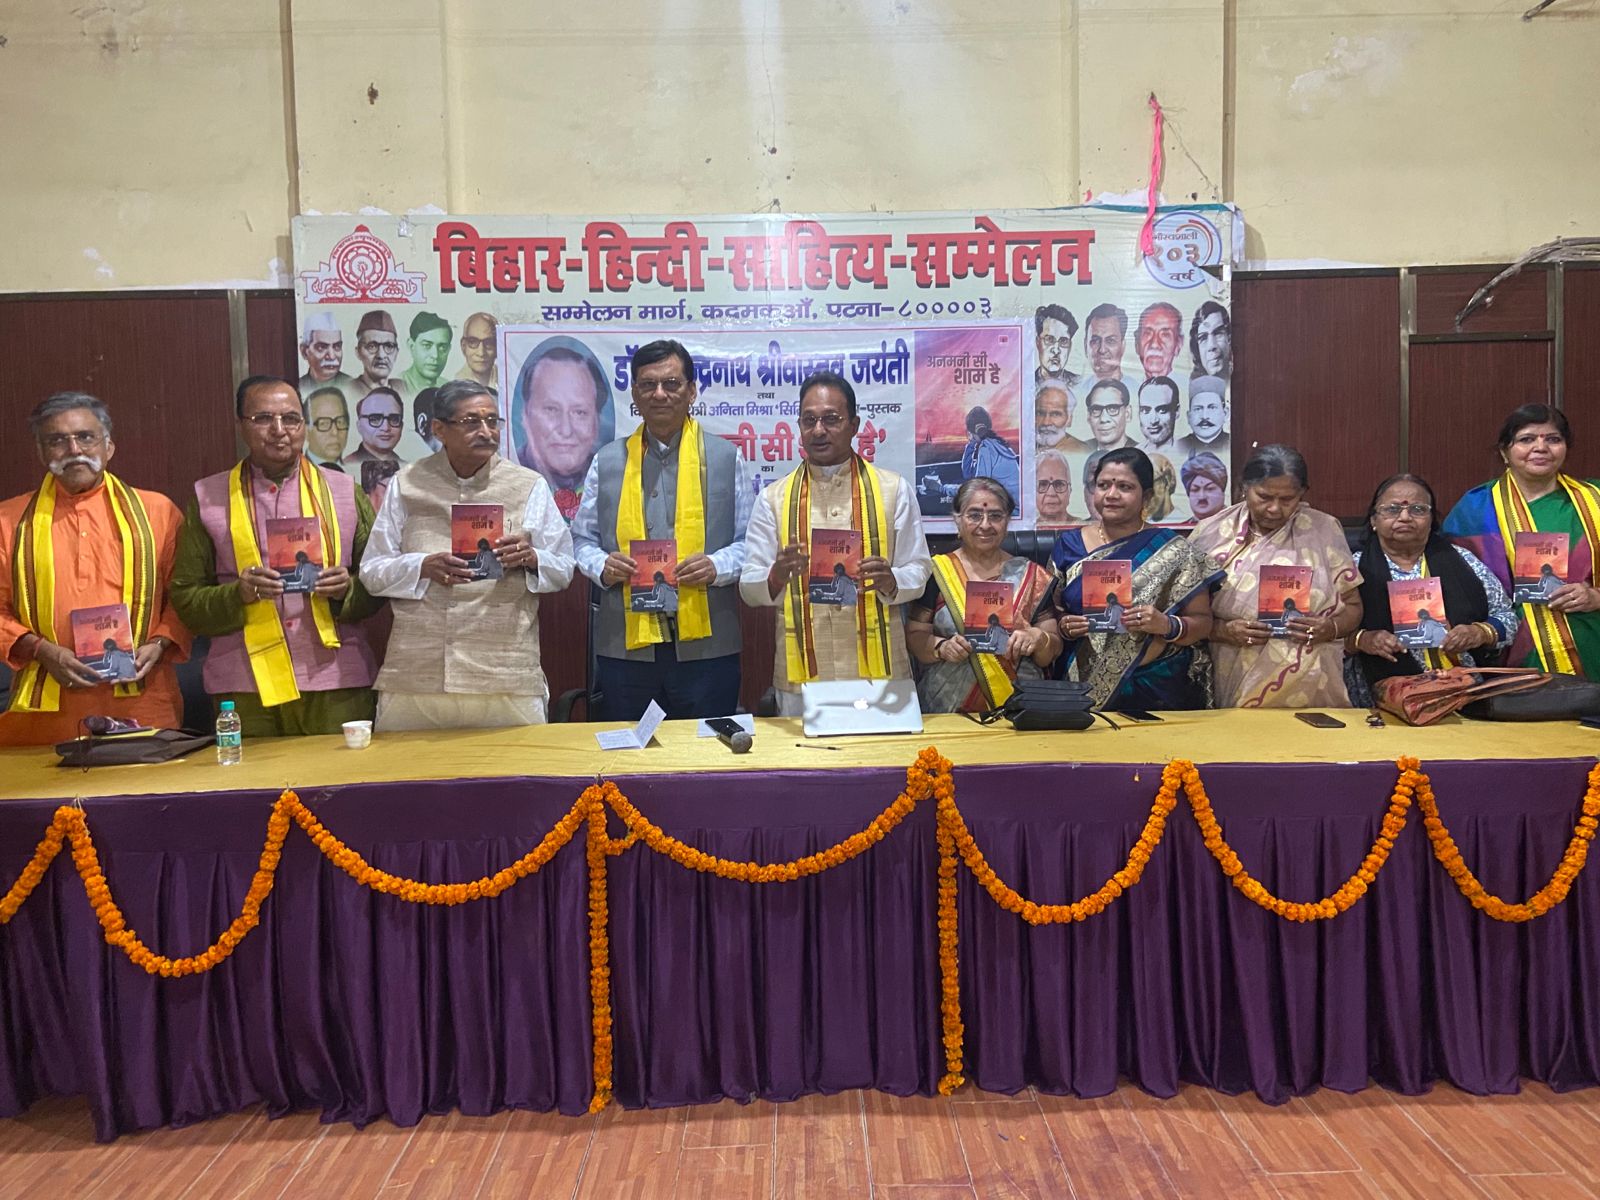 बिहार हिन्दी साहित्य सम्मेलन में डा शैलेन्द्रनाथ श्रीवास्तव की ८७वीं जयंती पर पुस्तक-लोकार्पण समारोह और कवि सम्मेलन आयोजित 